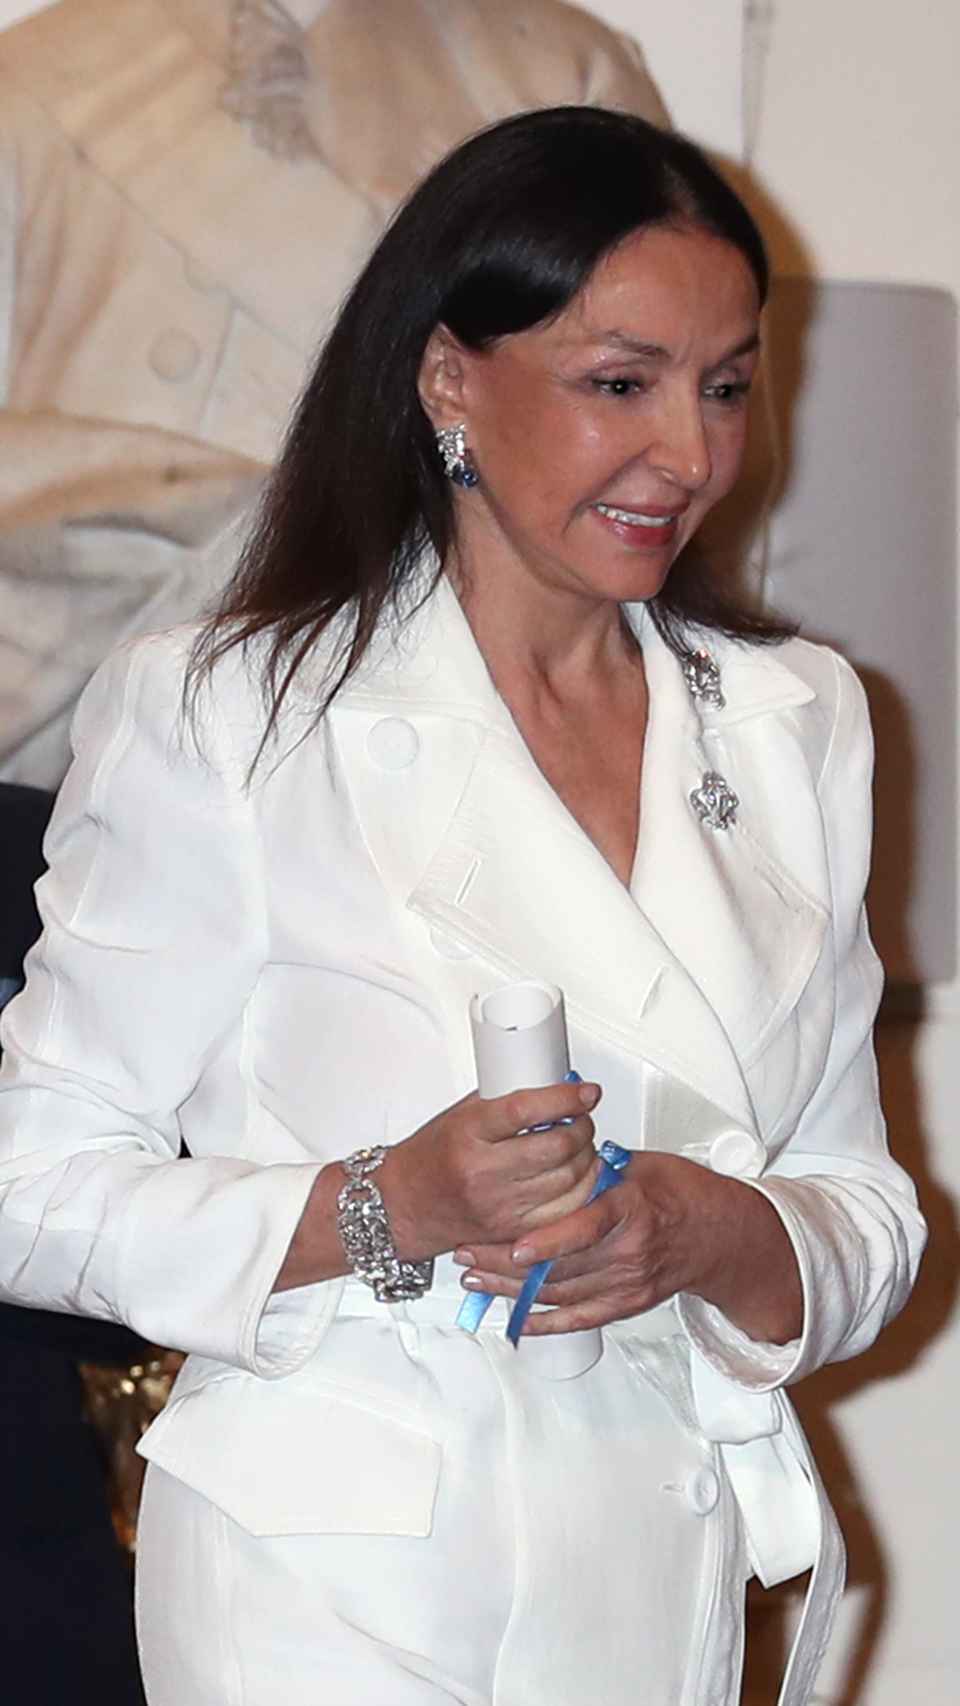 La empresaria y filántropa Esther Koplowitz en una imagen tomada en 2020.